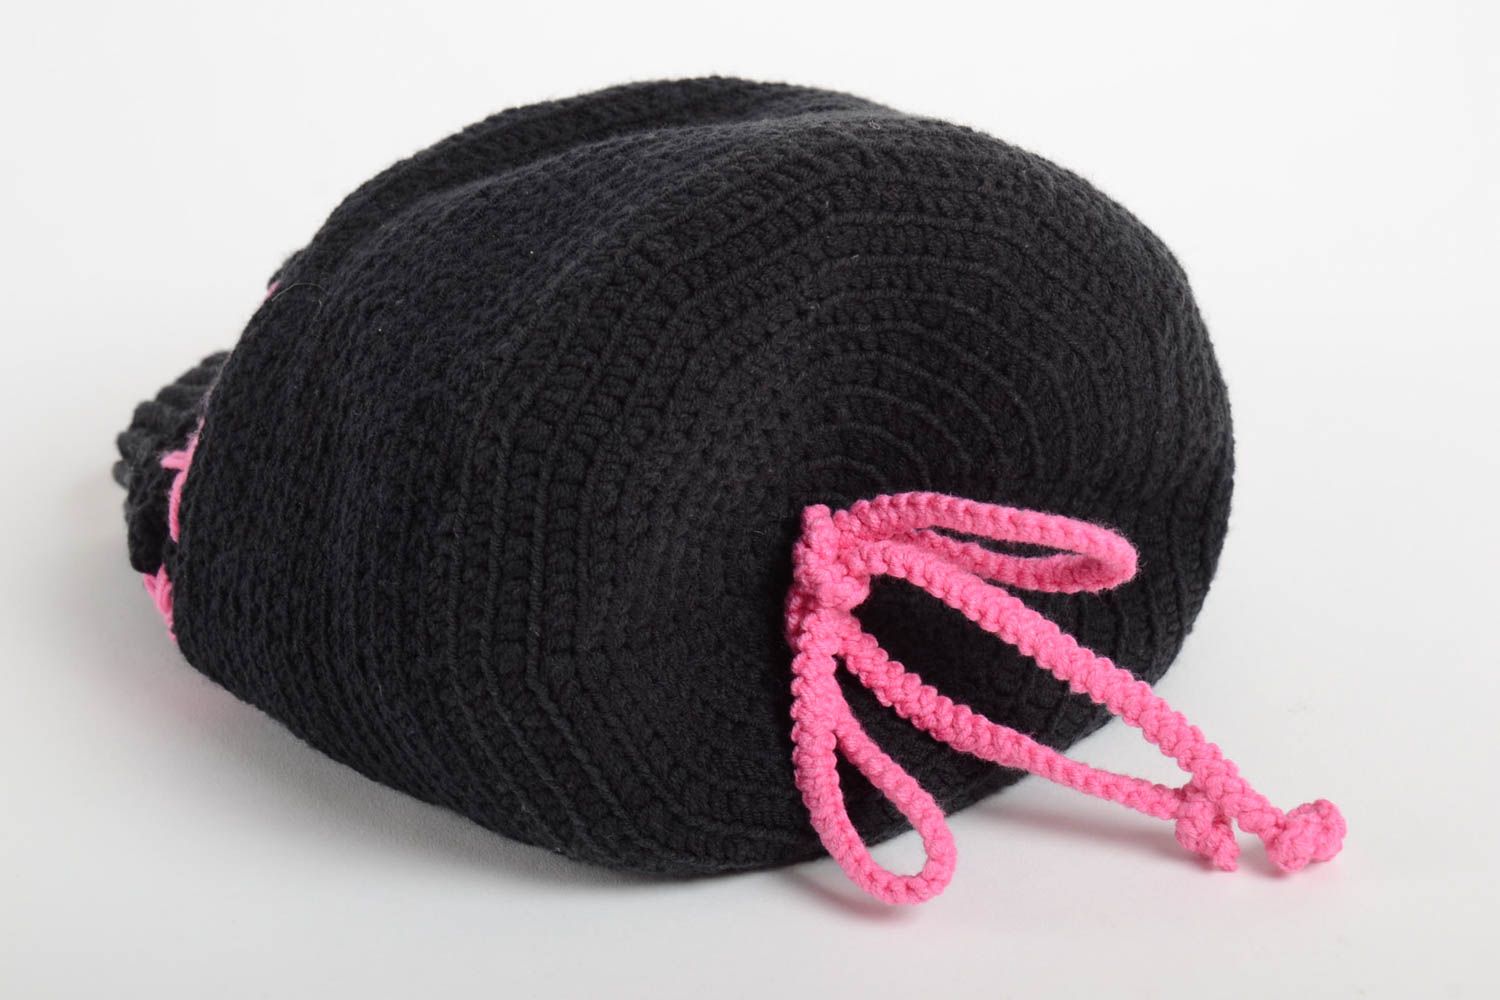 Handmade hat designer hat warm hat unusual beanie crocheted hat gift for women photo 4